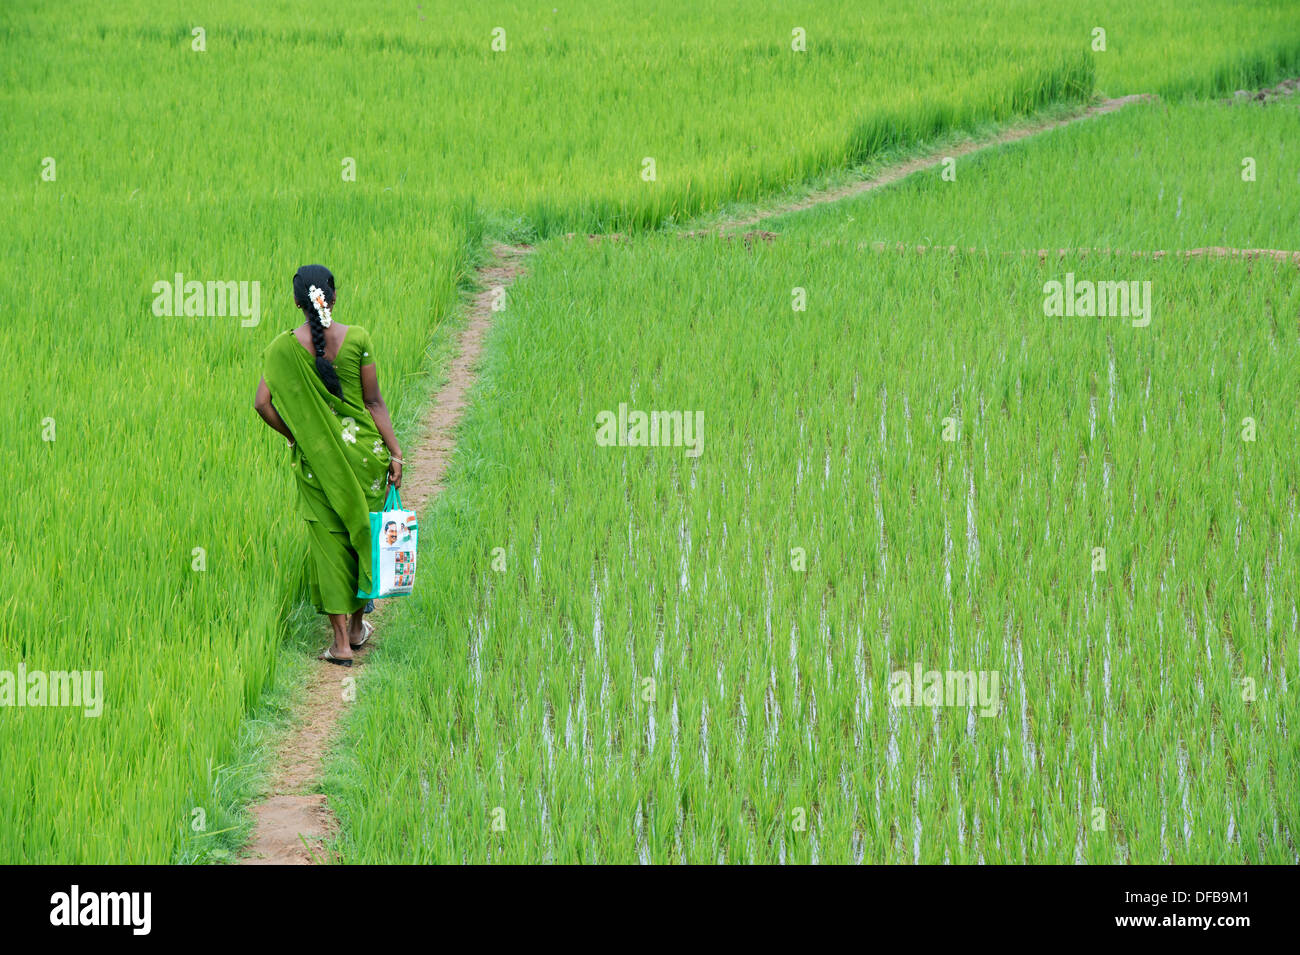 Indian woman wearing a green sari walking along a rice paddy. Andhra Pradesh, India Stock Photo